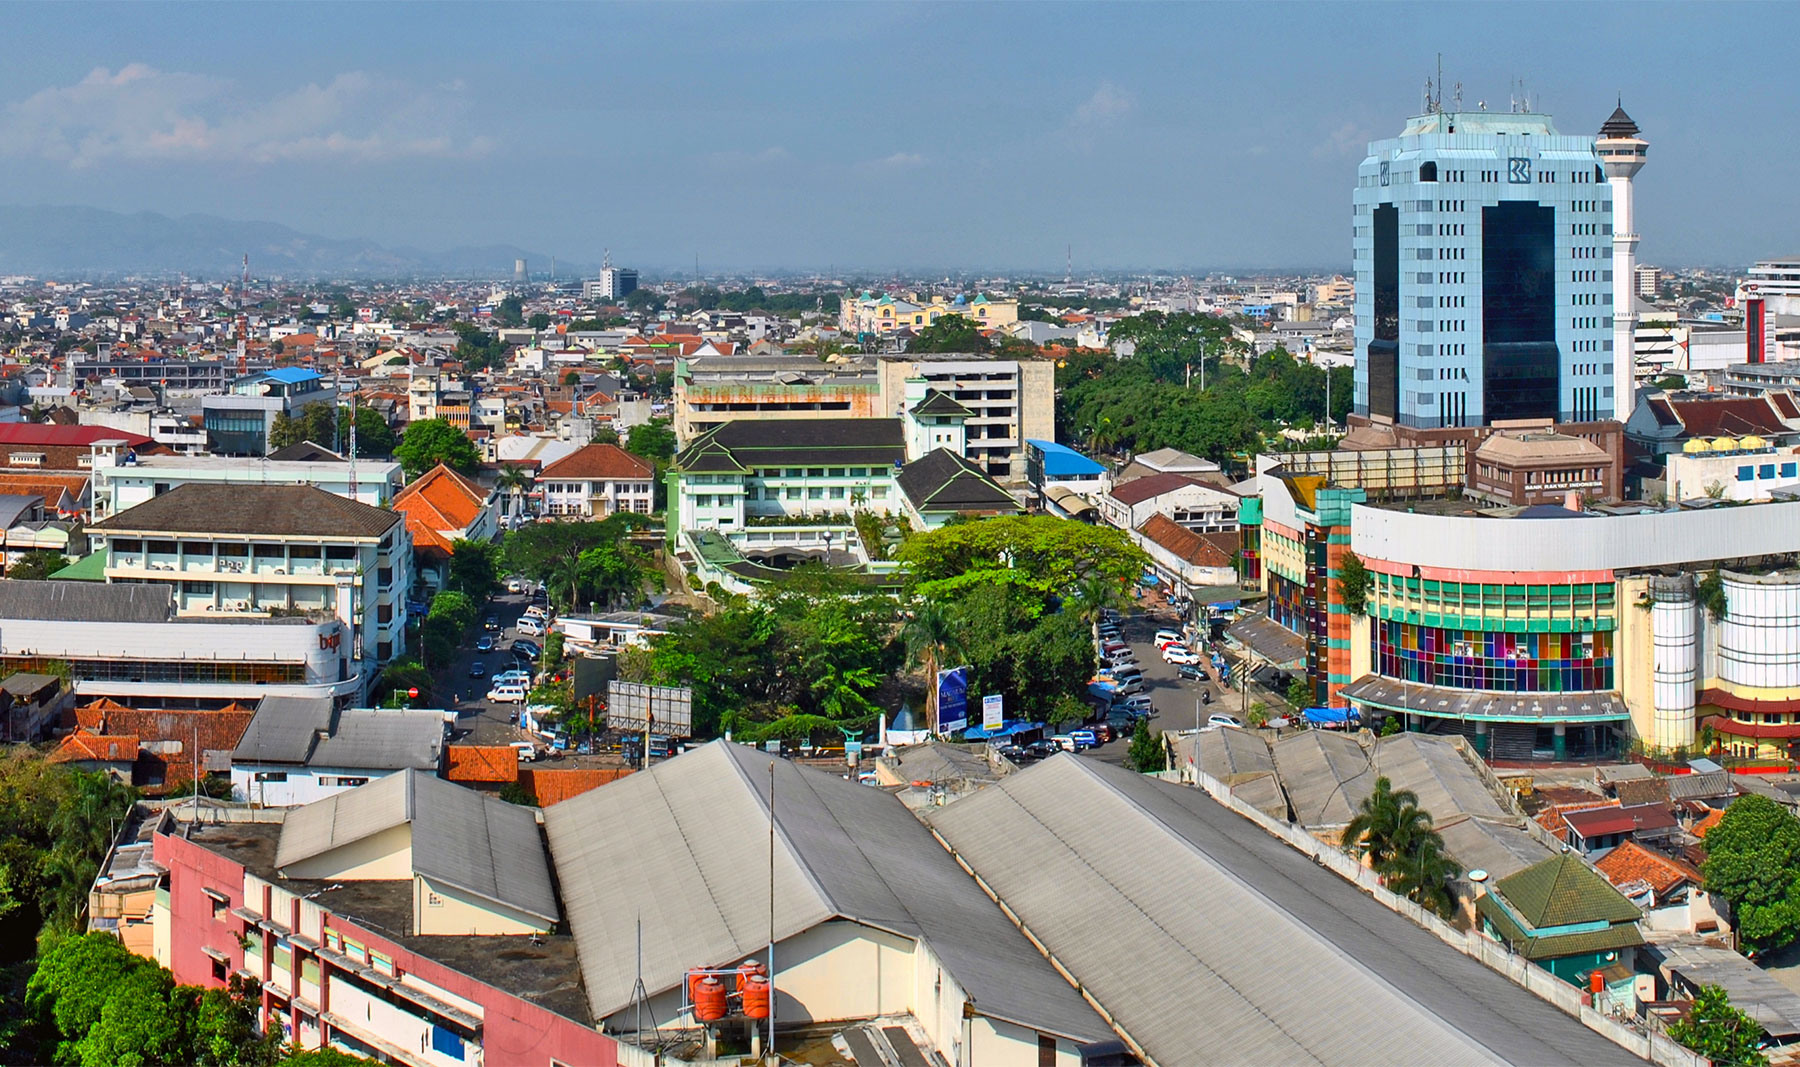  Bandung Indonesien  Reise Tipps f r einen spannenden Urlaub